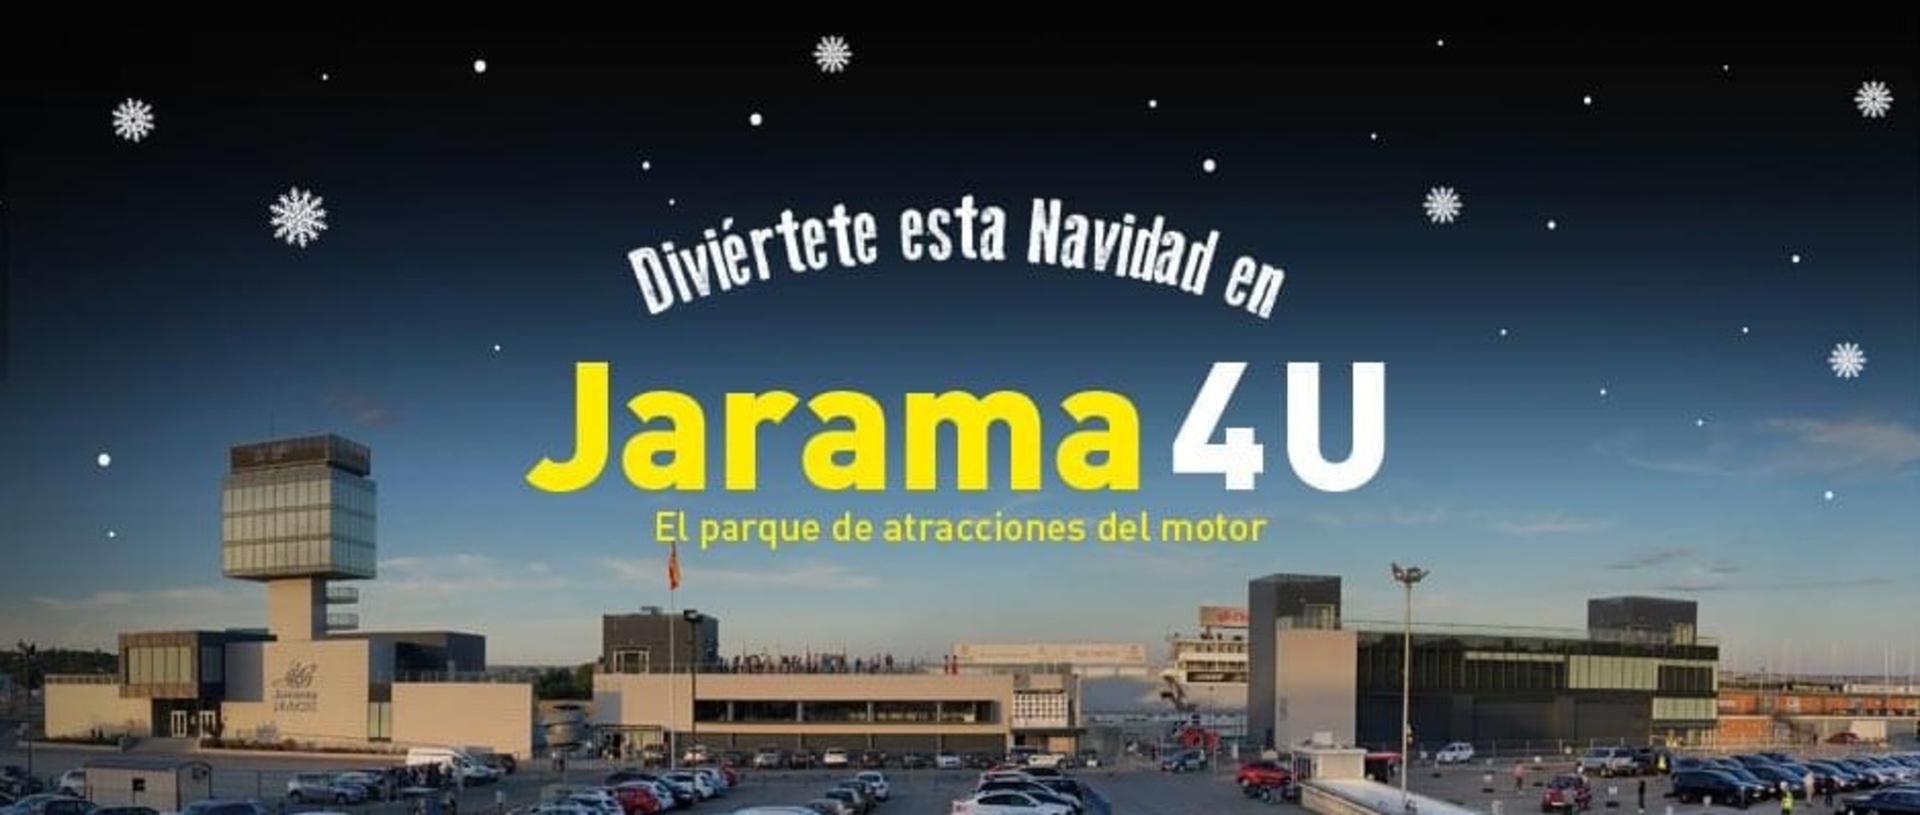 Jarama 4u, una forma diferente de disfrutar de la Navidad en el Circuito del Jarama